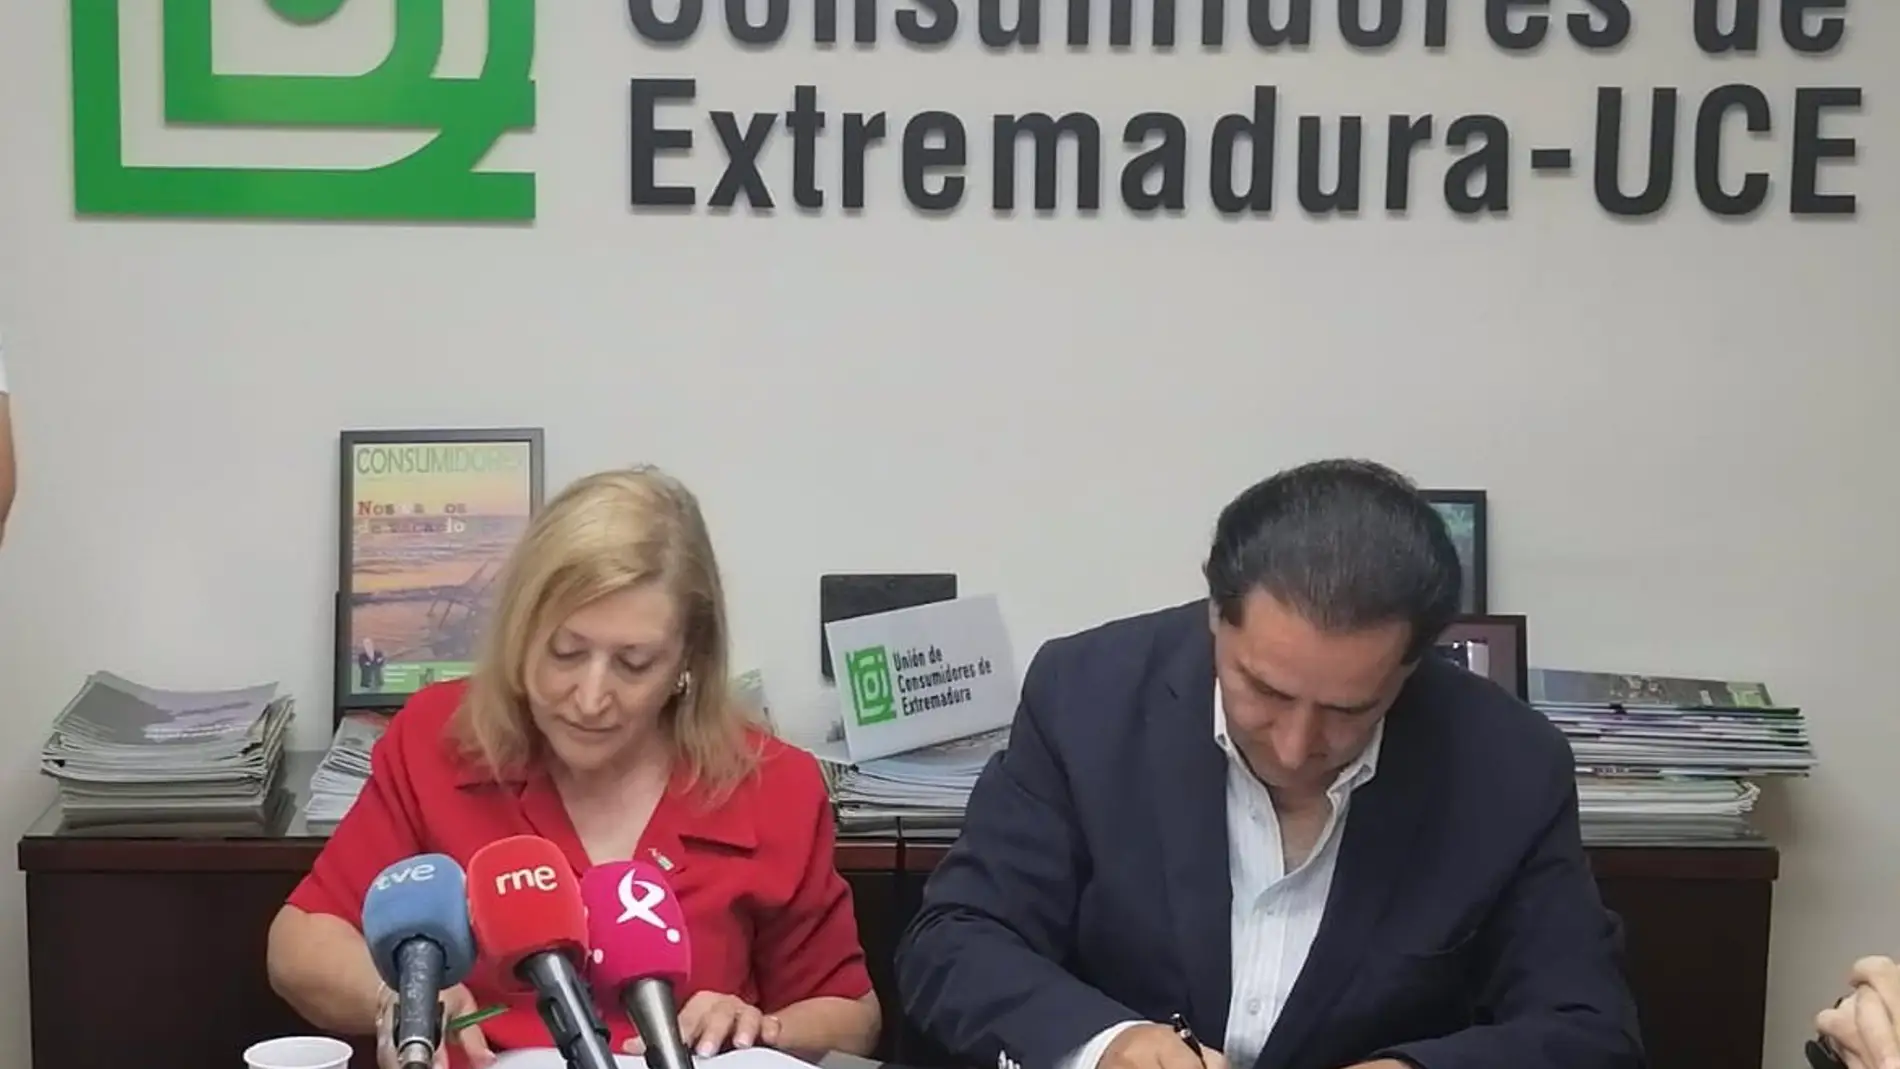 La Unión de Consumidores de Extremadura asesorará a los usuarios de Asociación Oncológica extremeña en defensa de sus derechos